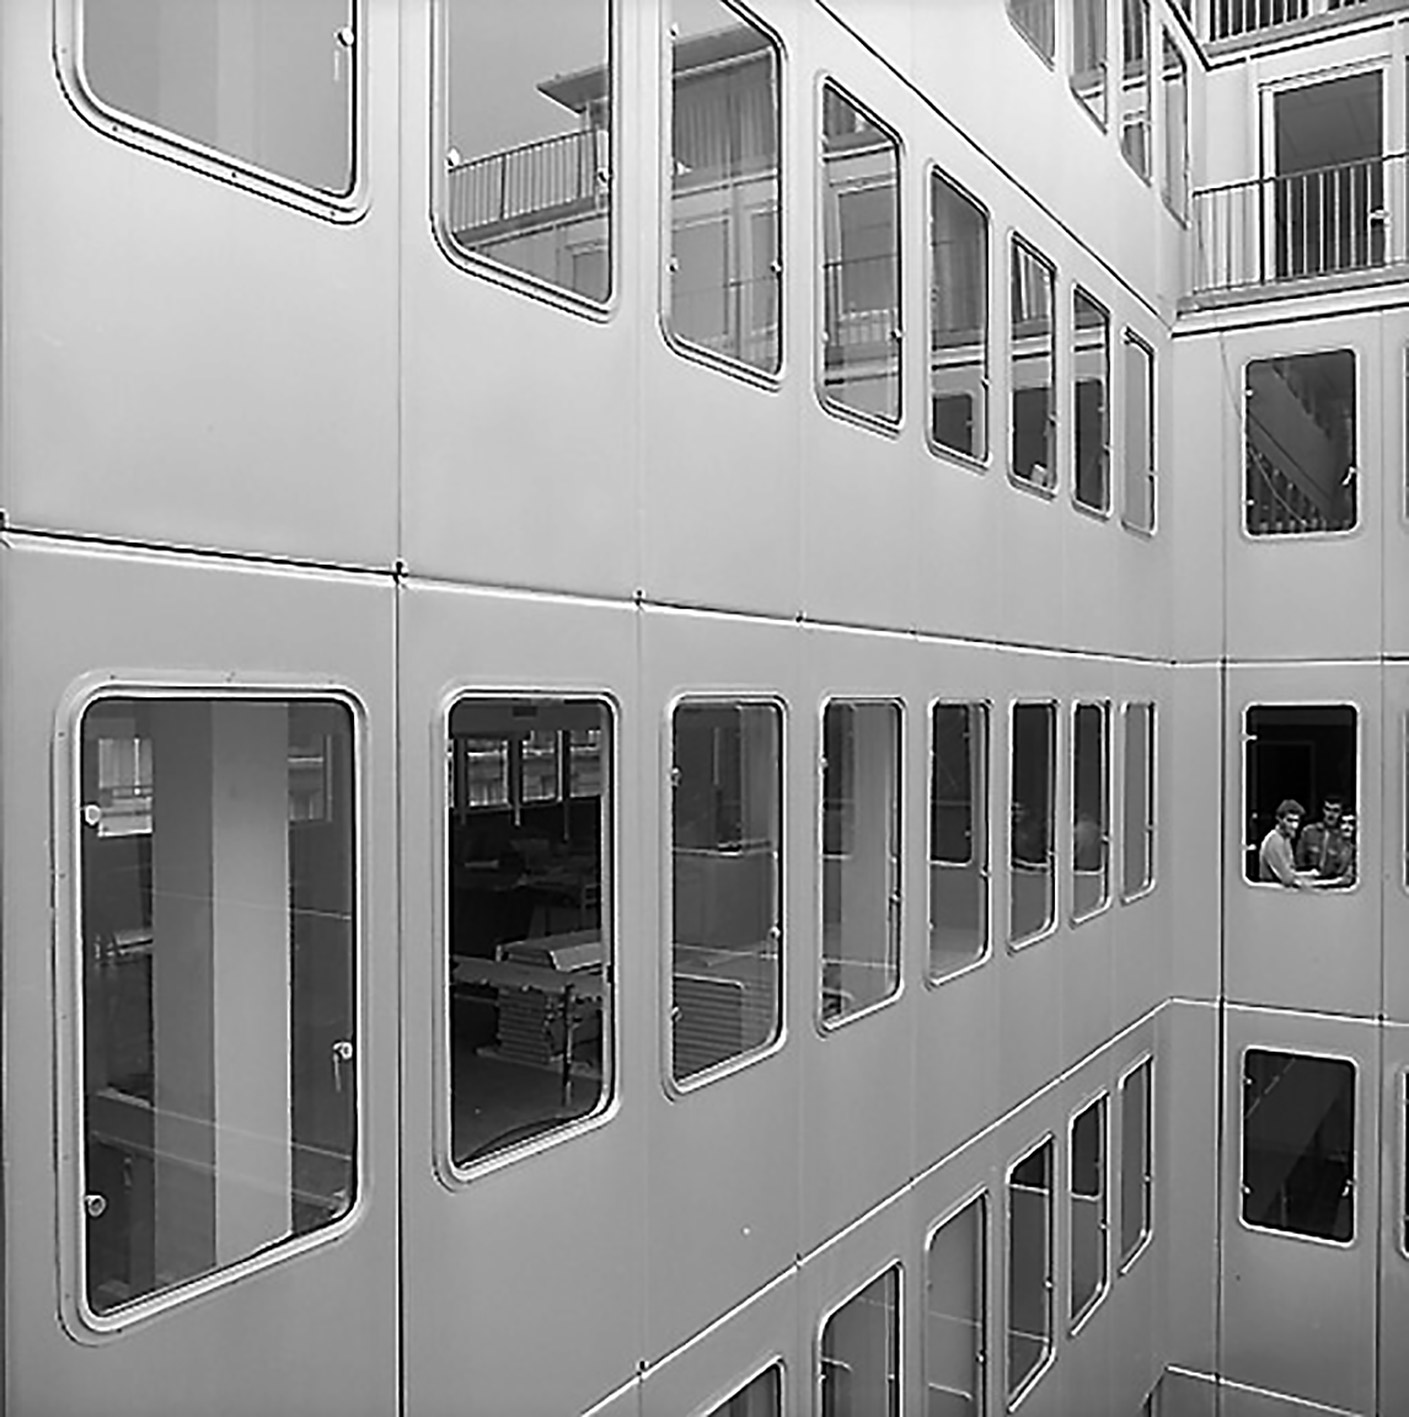 Headquarters of the Compagnie Industrielle de Matériel de Transport (CIMT), Neuilly-sur-Seine (architect E. Deschler, 1963). Facade panels designed by Jean Prouvé.